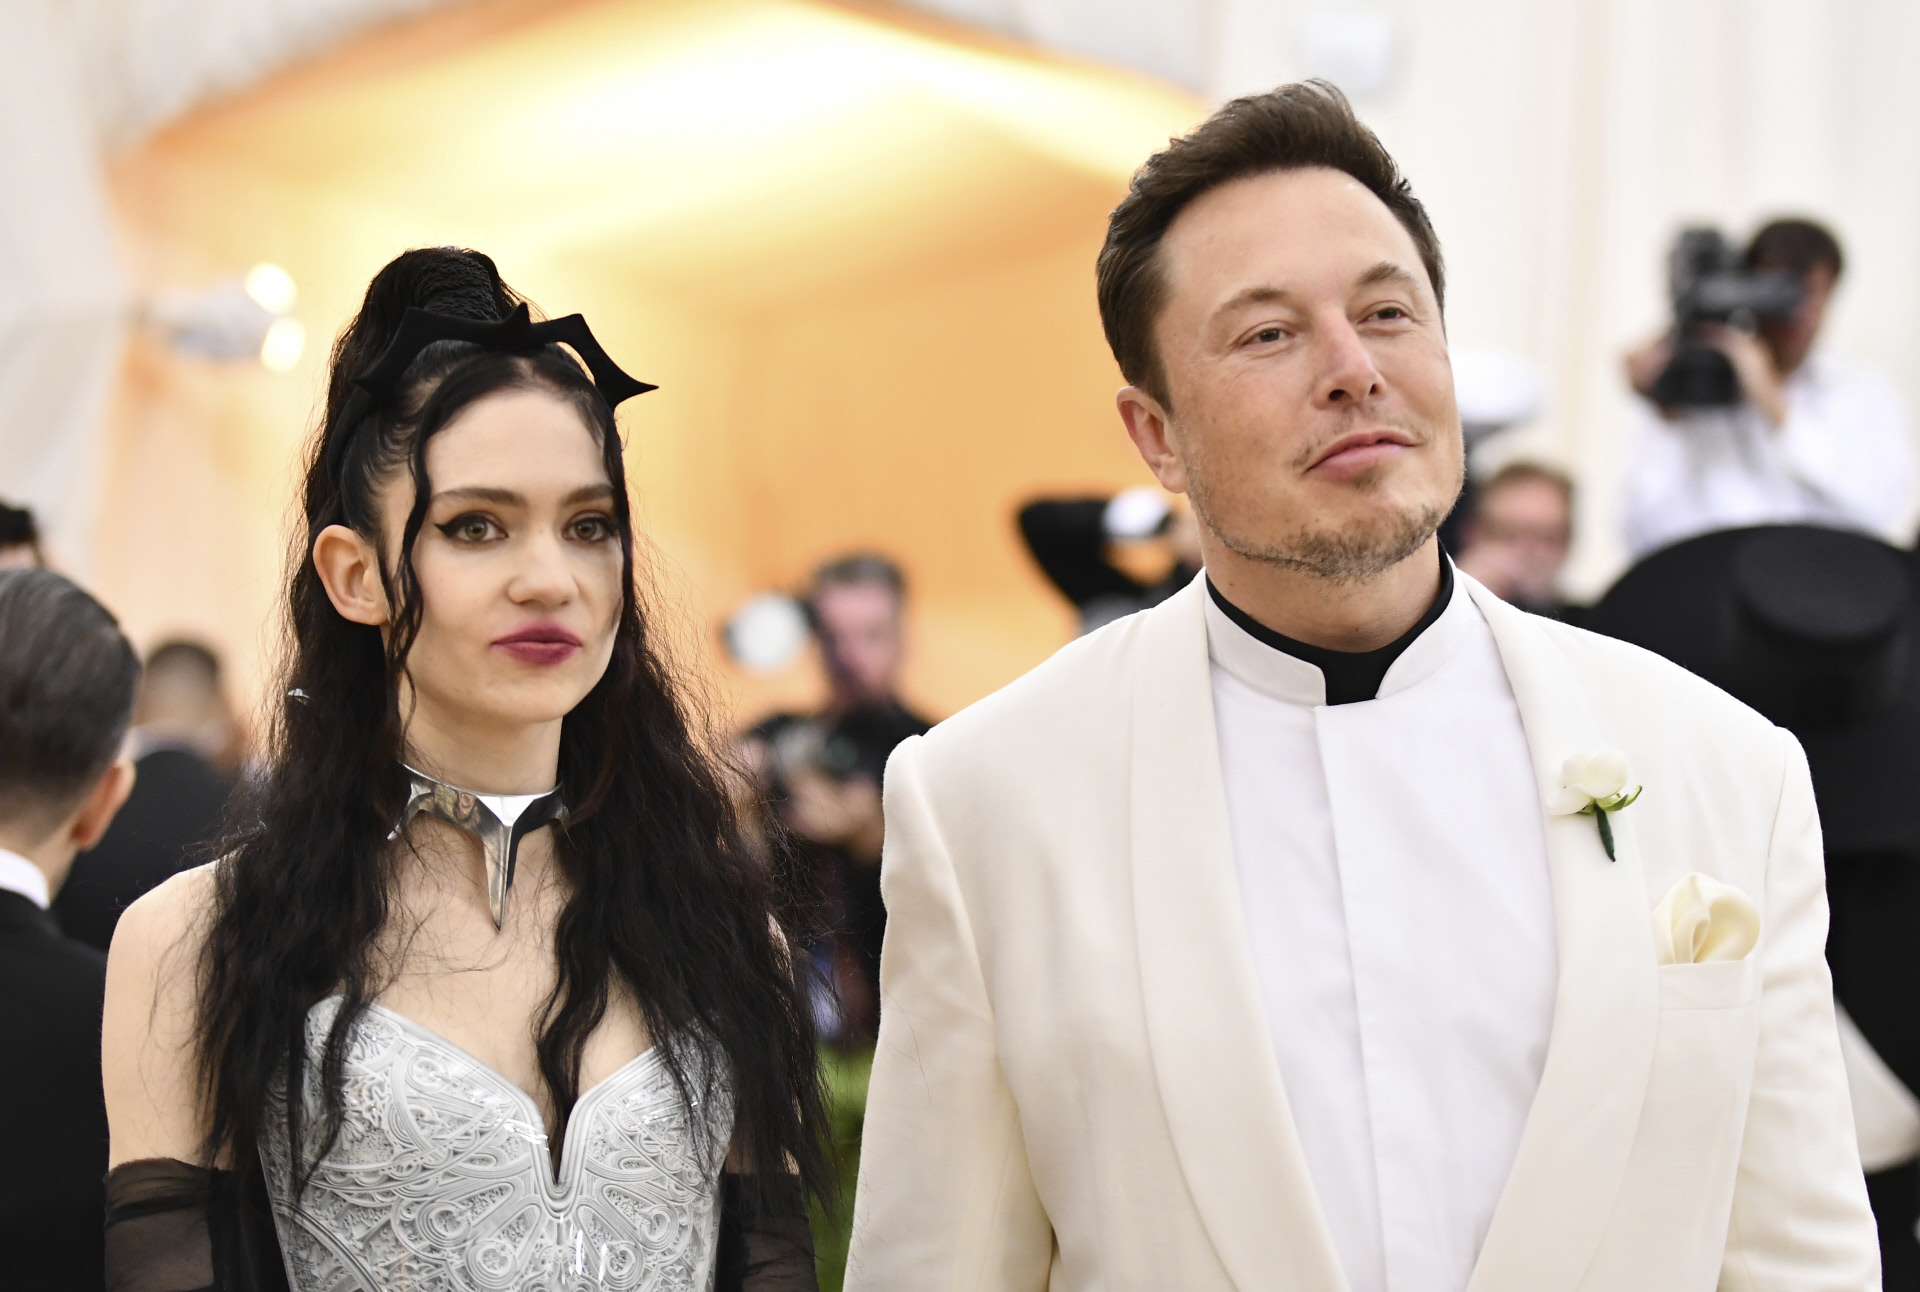 Elon Musk fue padre de gemelos con una empleada suya (¿lo sabía su novia?)